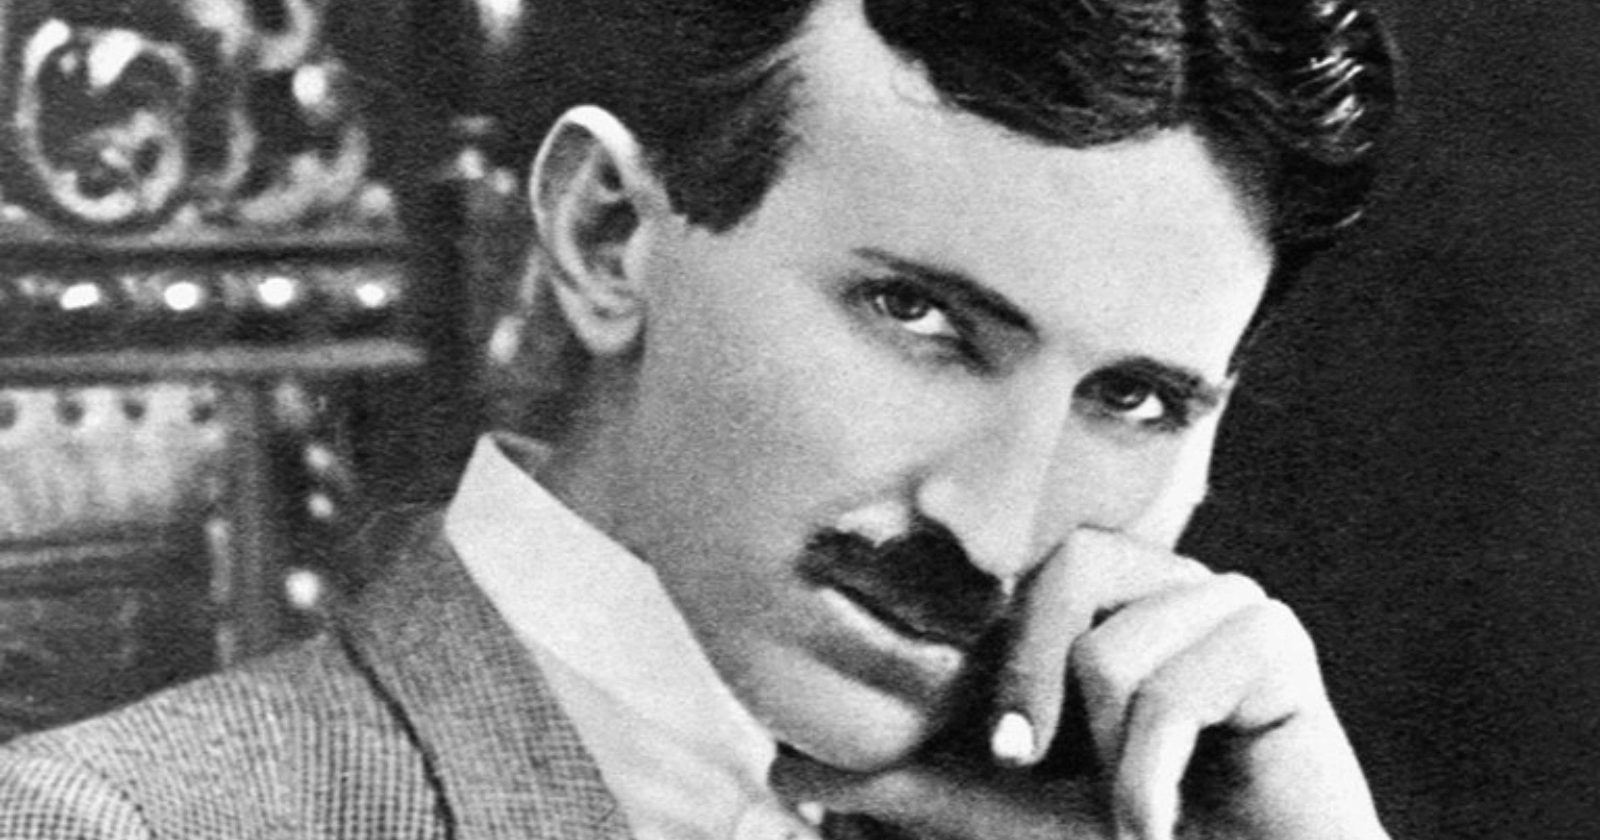 9 pensamentos inspiradores de Nikolas Tesla para te trazer muita motivação nos sonhos